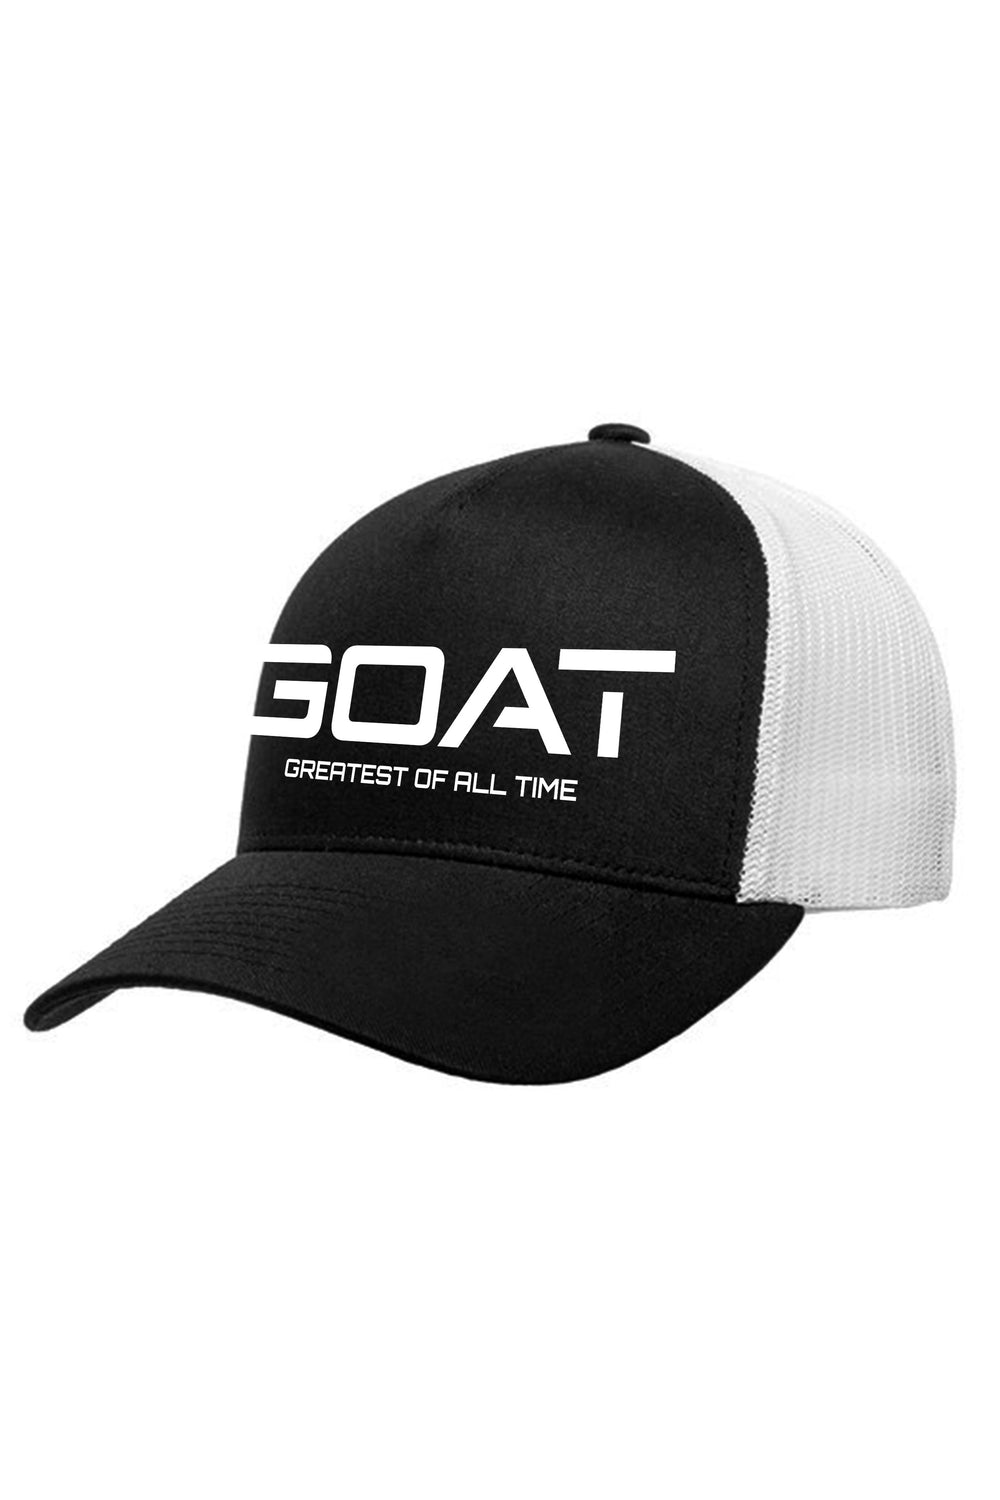 Goat V2 Retro Trucker Hat (White Logo) - Zamage